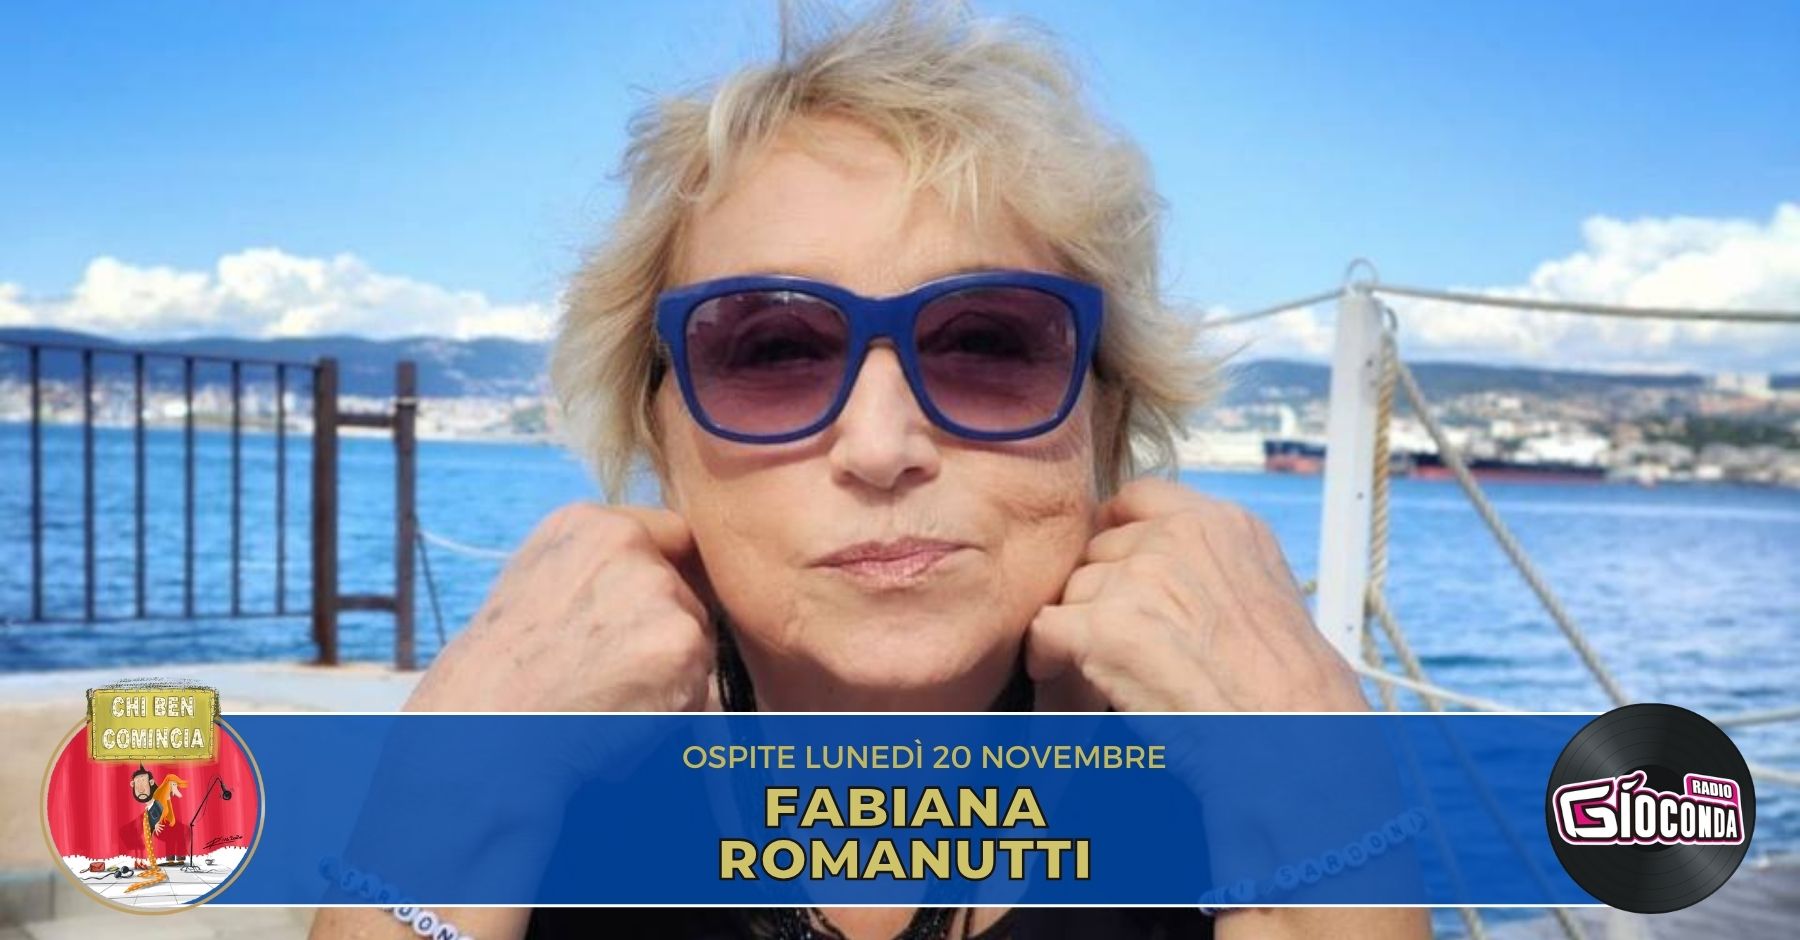 Fabiana Romanutti, scrittrice ed editrice, è l’ospite della nuova puntata di “Chi ben comincia” in onda lunedì 20 novembre alle 18.00.